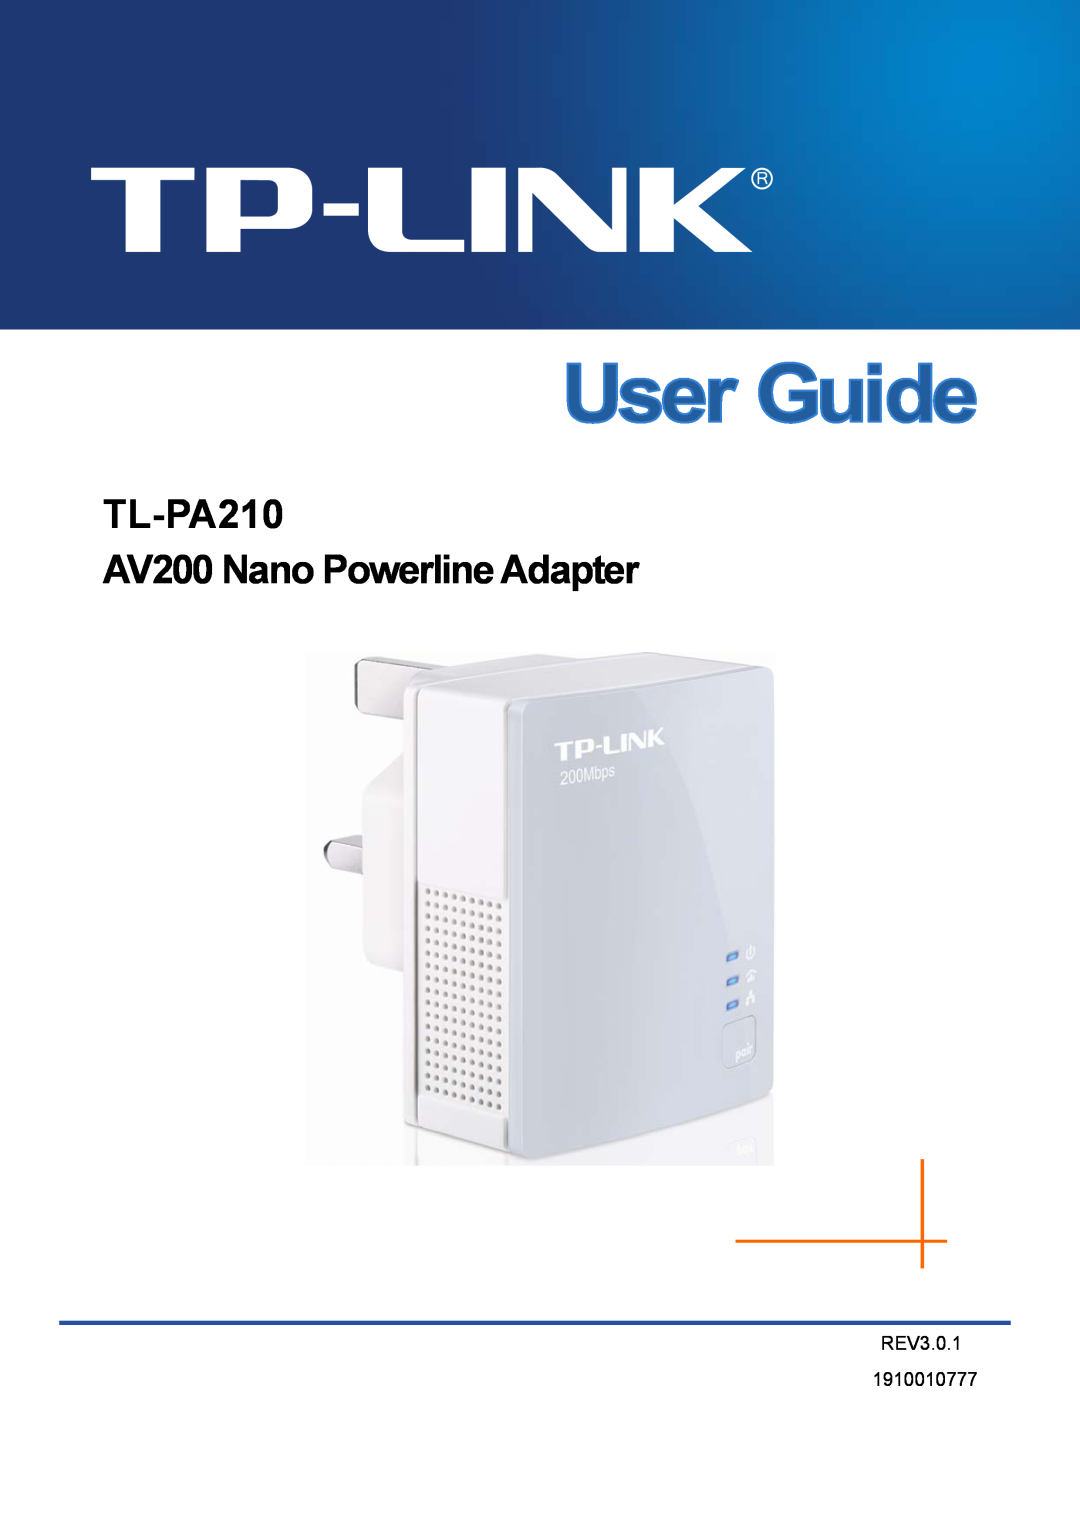 TP-Link manual TL-PA210 AV200 Nano Powerline Adapter, REV3.0.1 1910010777 